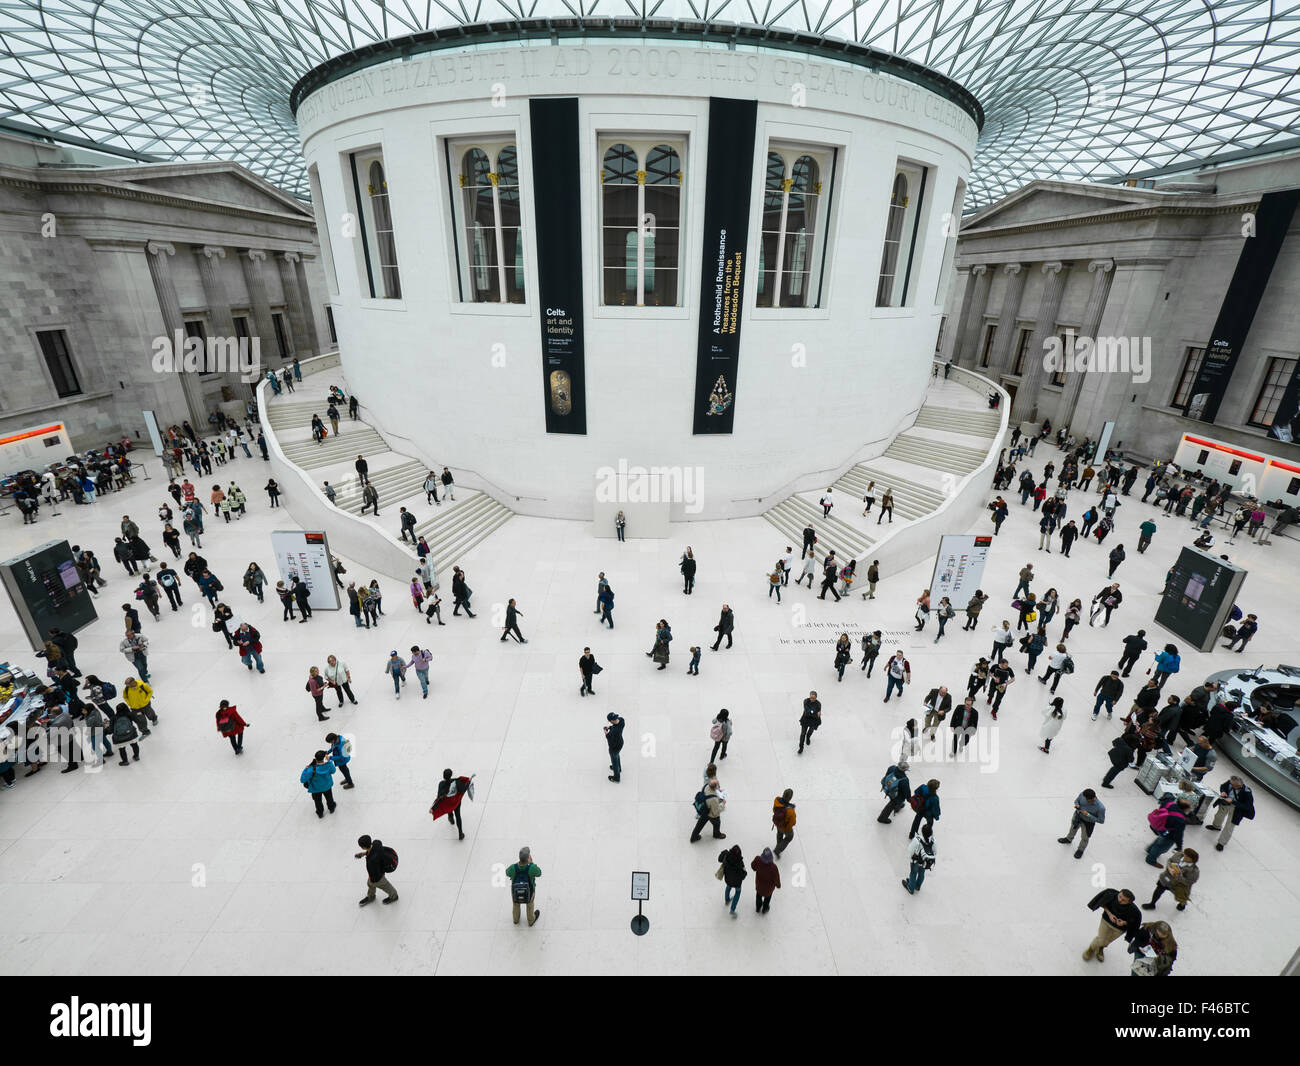 Die Bahnhofshalle (auch bekannt als große Viereck oder der Great Court) im British Museum wurde von Foster and Partners entworfen. Stockfoto